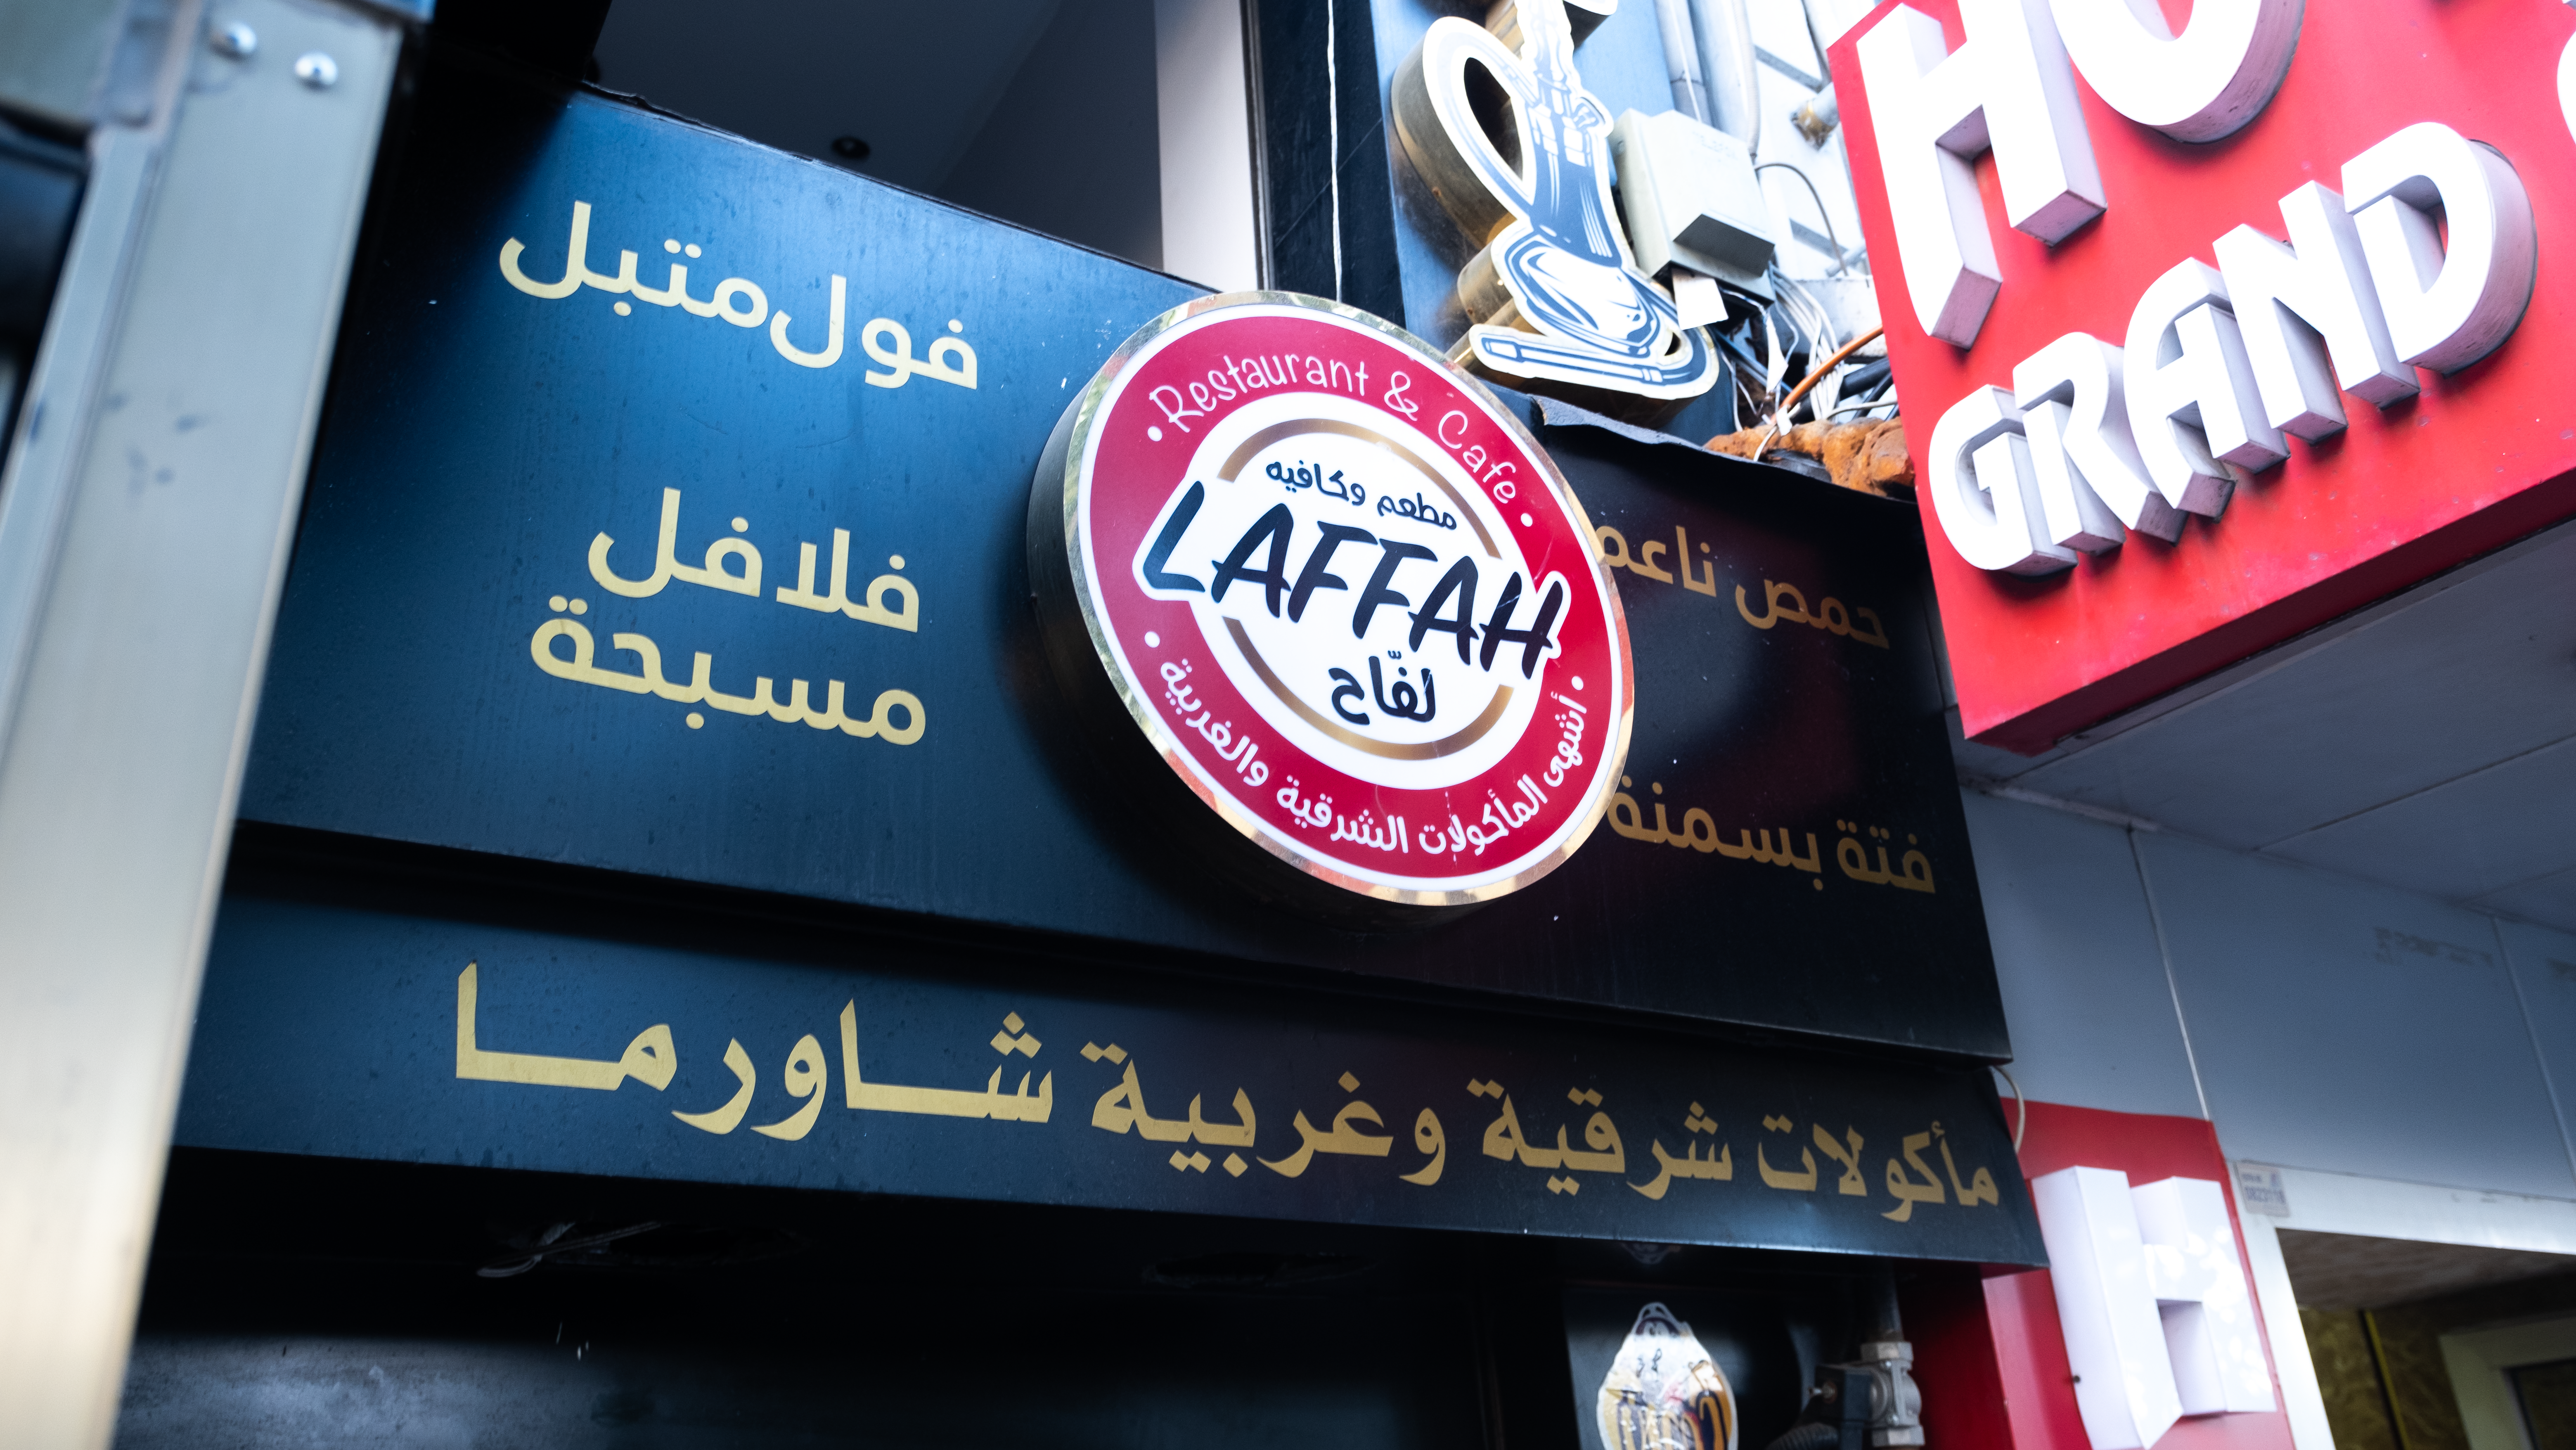 لافتات عربية على واجهة مطعم عربي في إسطنبول - تركيا. Arabic restaurant front in Istanbul with Arabic signage (photo: Volkan Kisa)